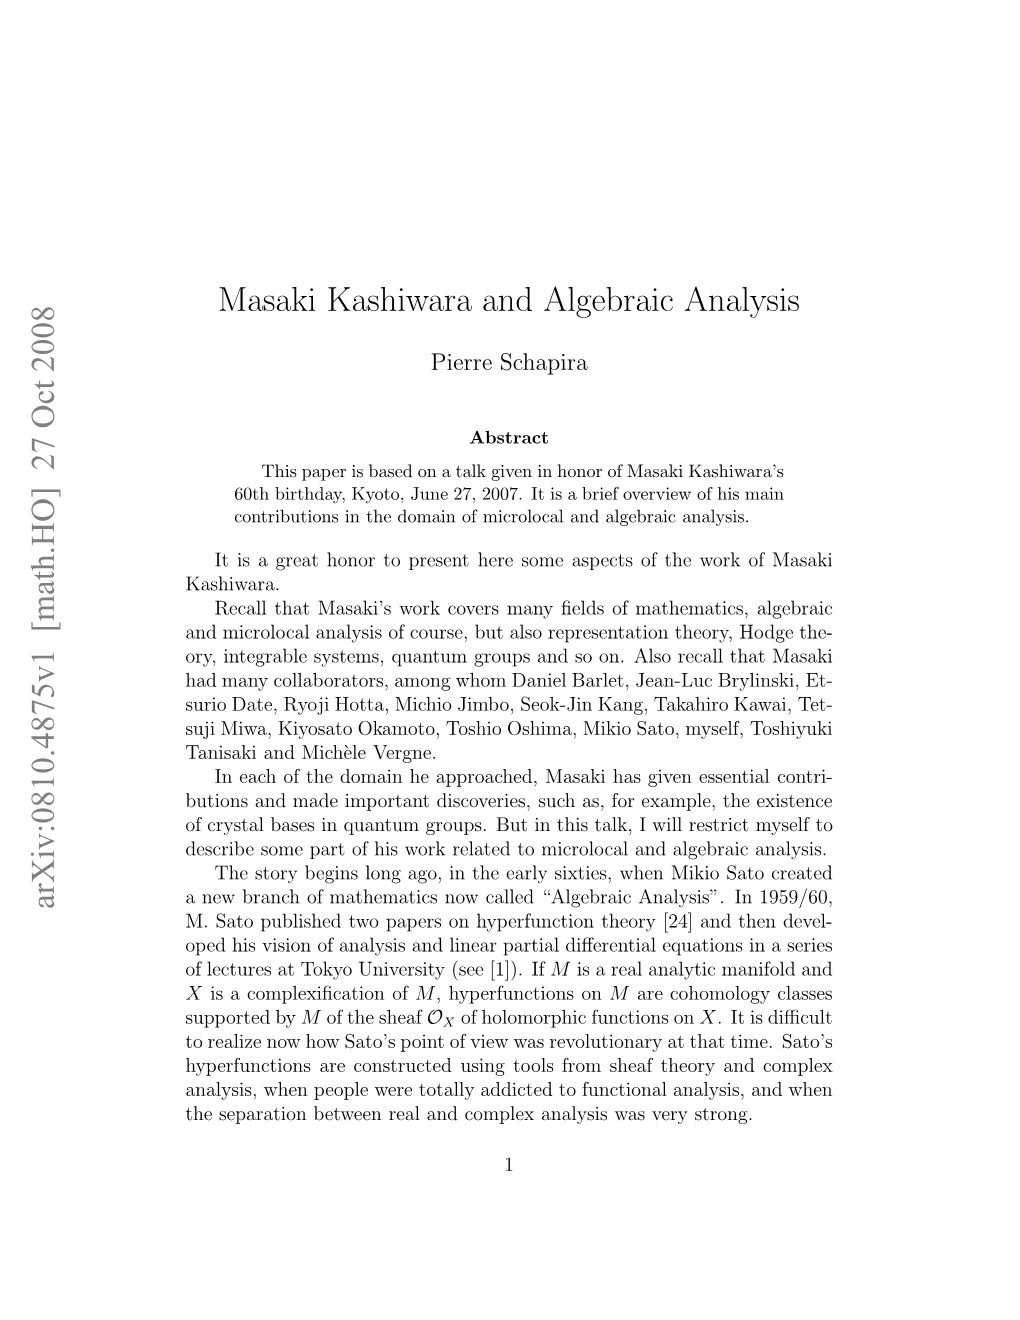 27 Oct 2008 Masaki Kashiwara and Algebraic Analysis